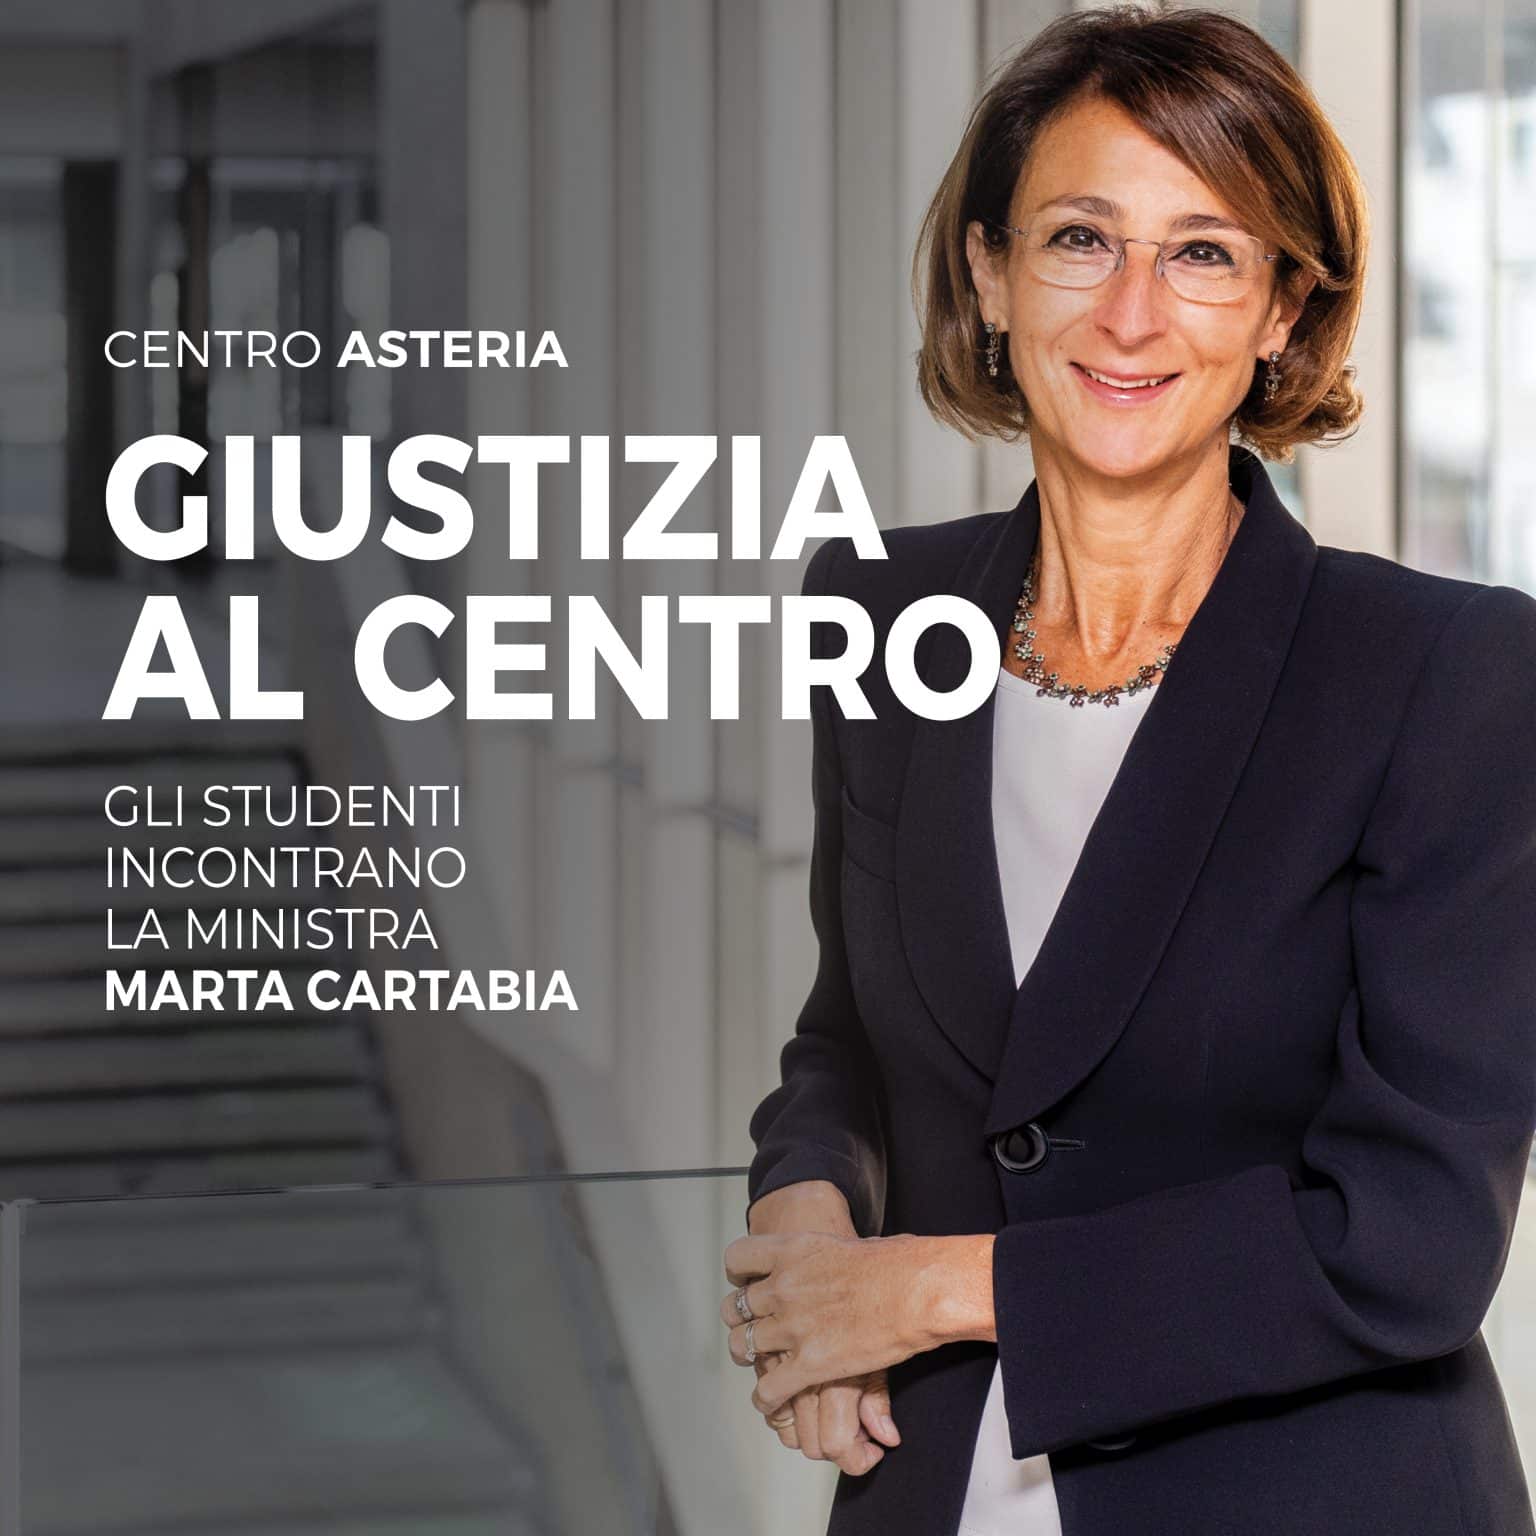 La Scuola “Maiorana” di Catania incontra la Ministra della Giustizia Marta Cartabia